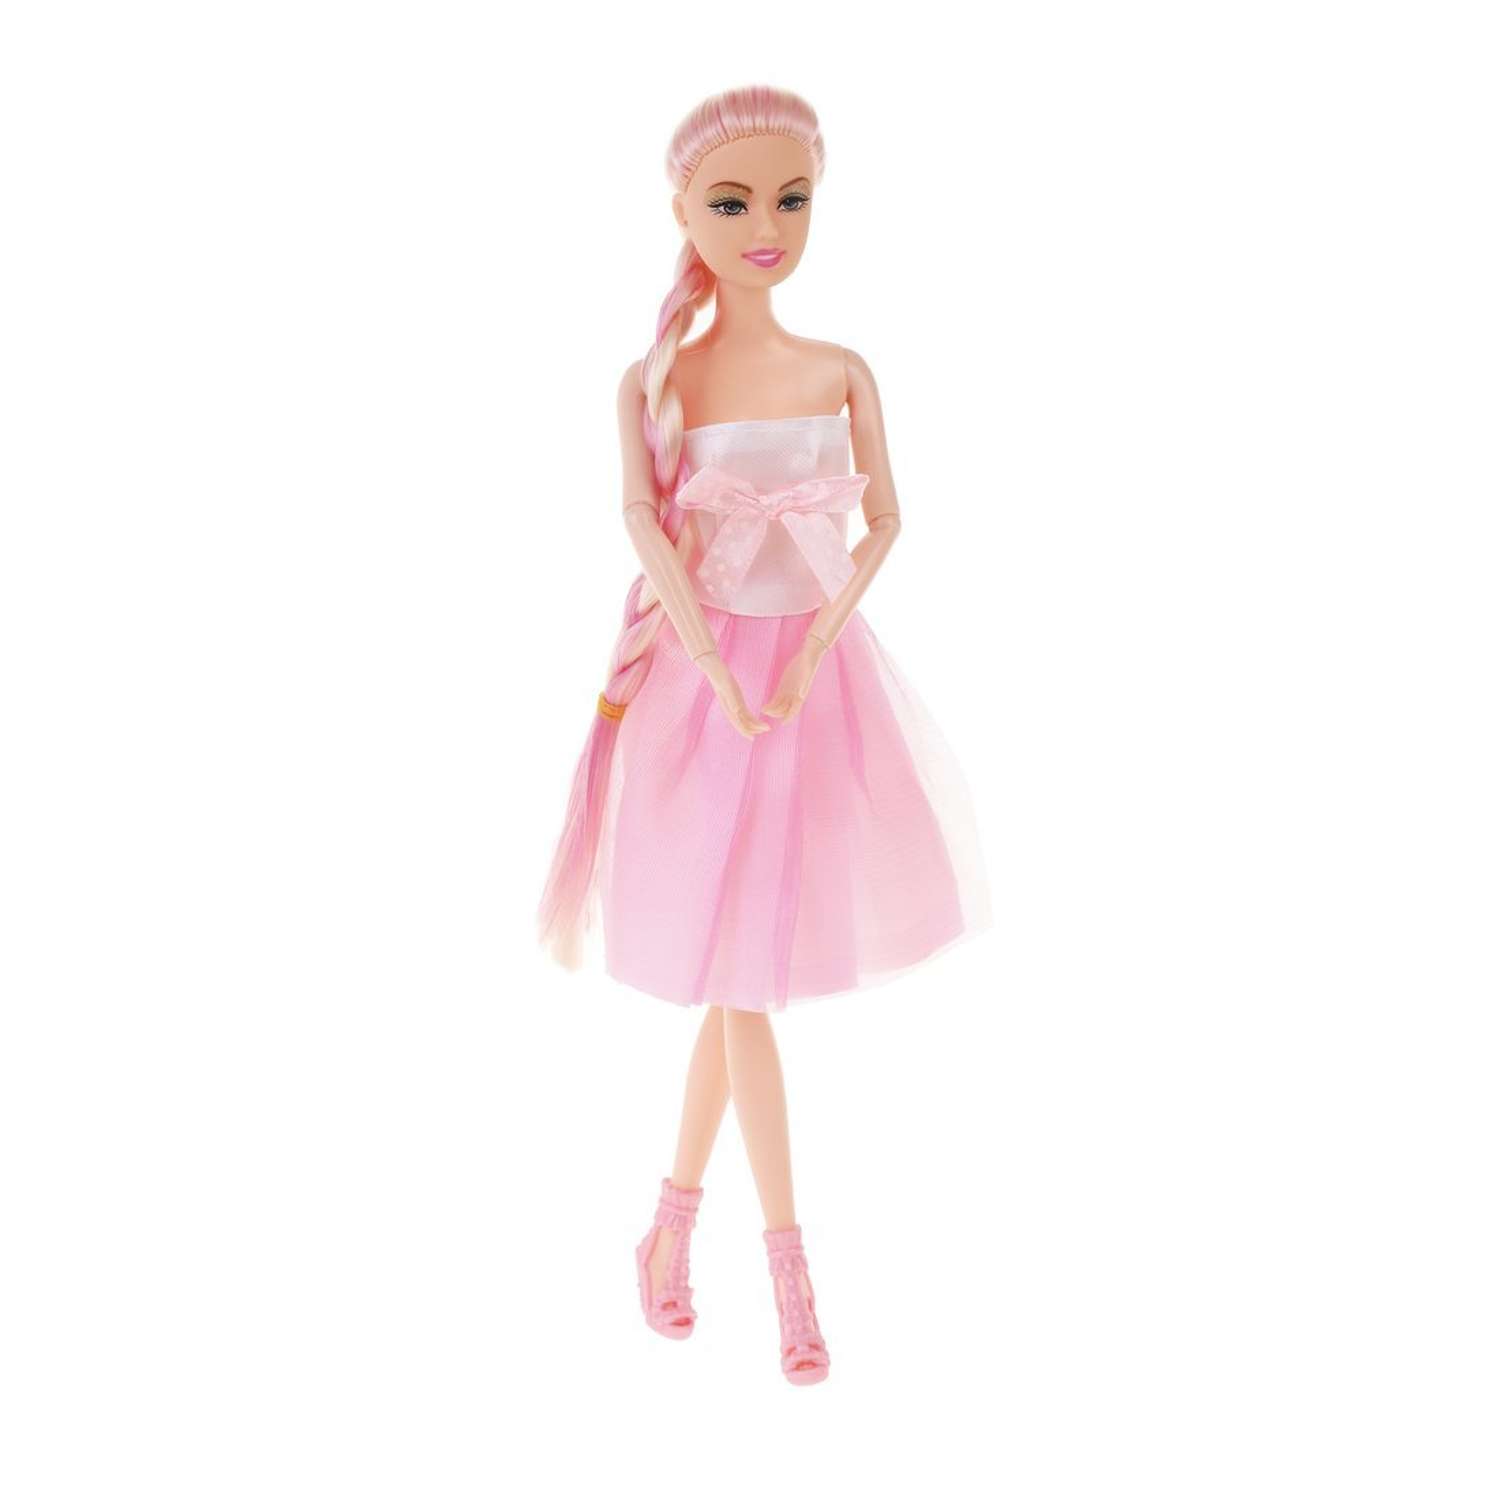 Кукла для девочки Наша Игрушка 29 см шарнирная и аксессуары. Игровой набор с зеркальцем и расческой 648968 - фото 2